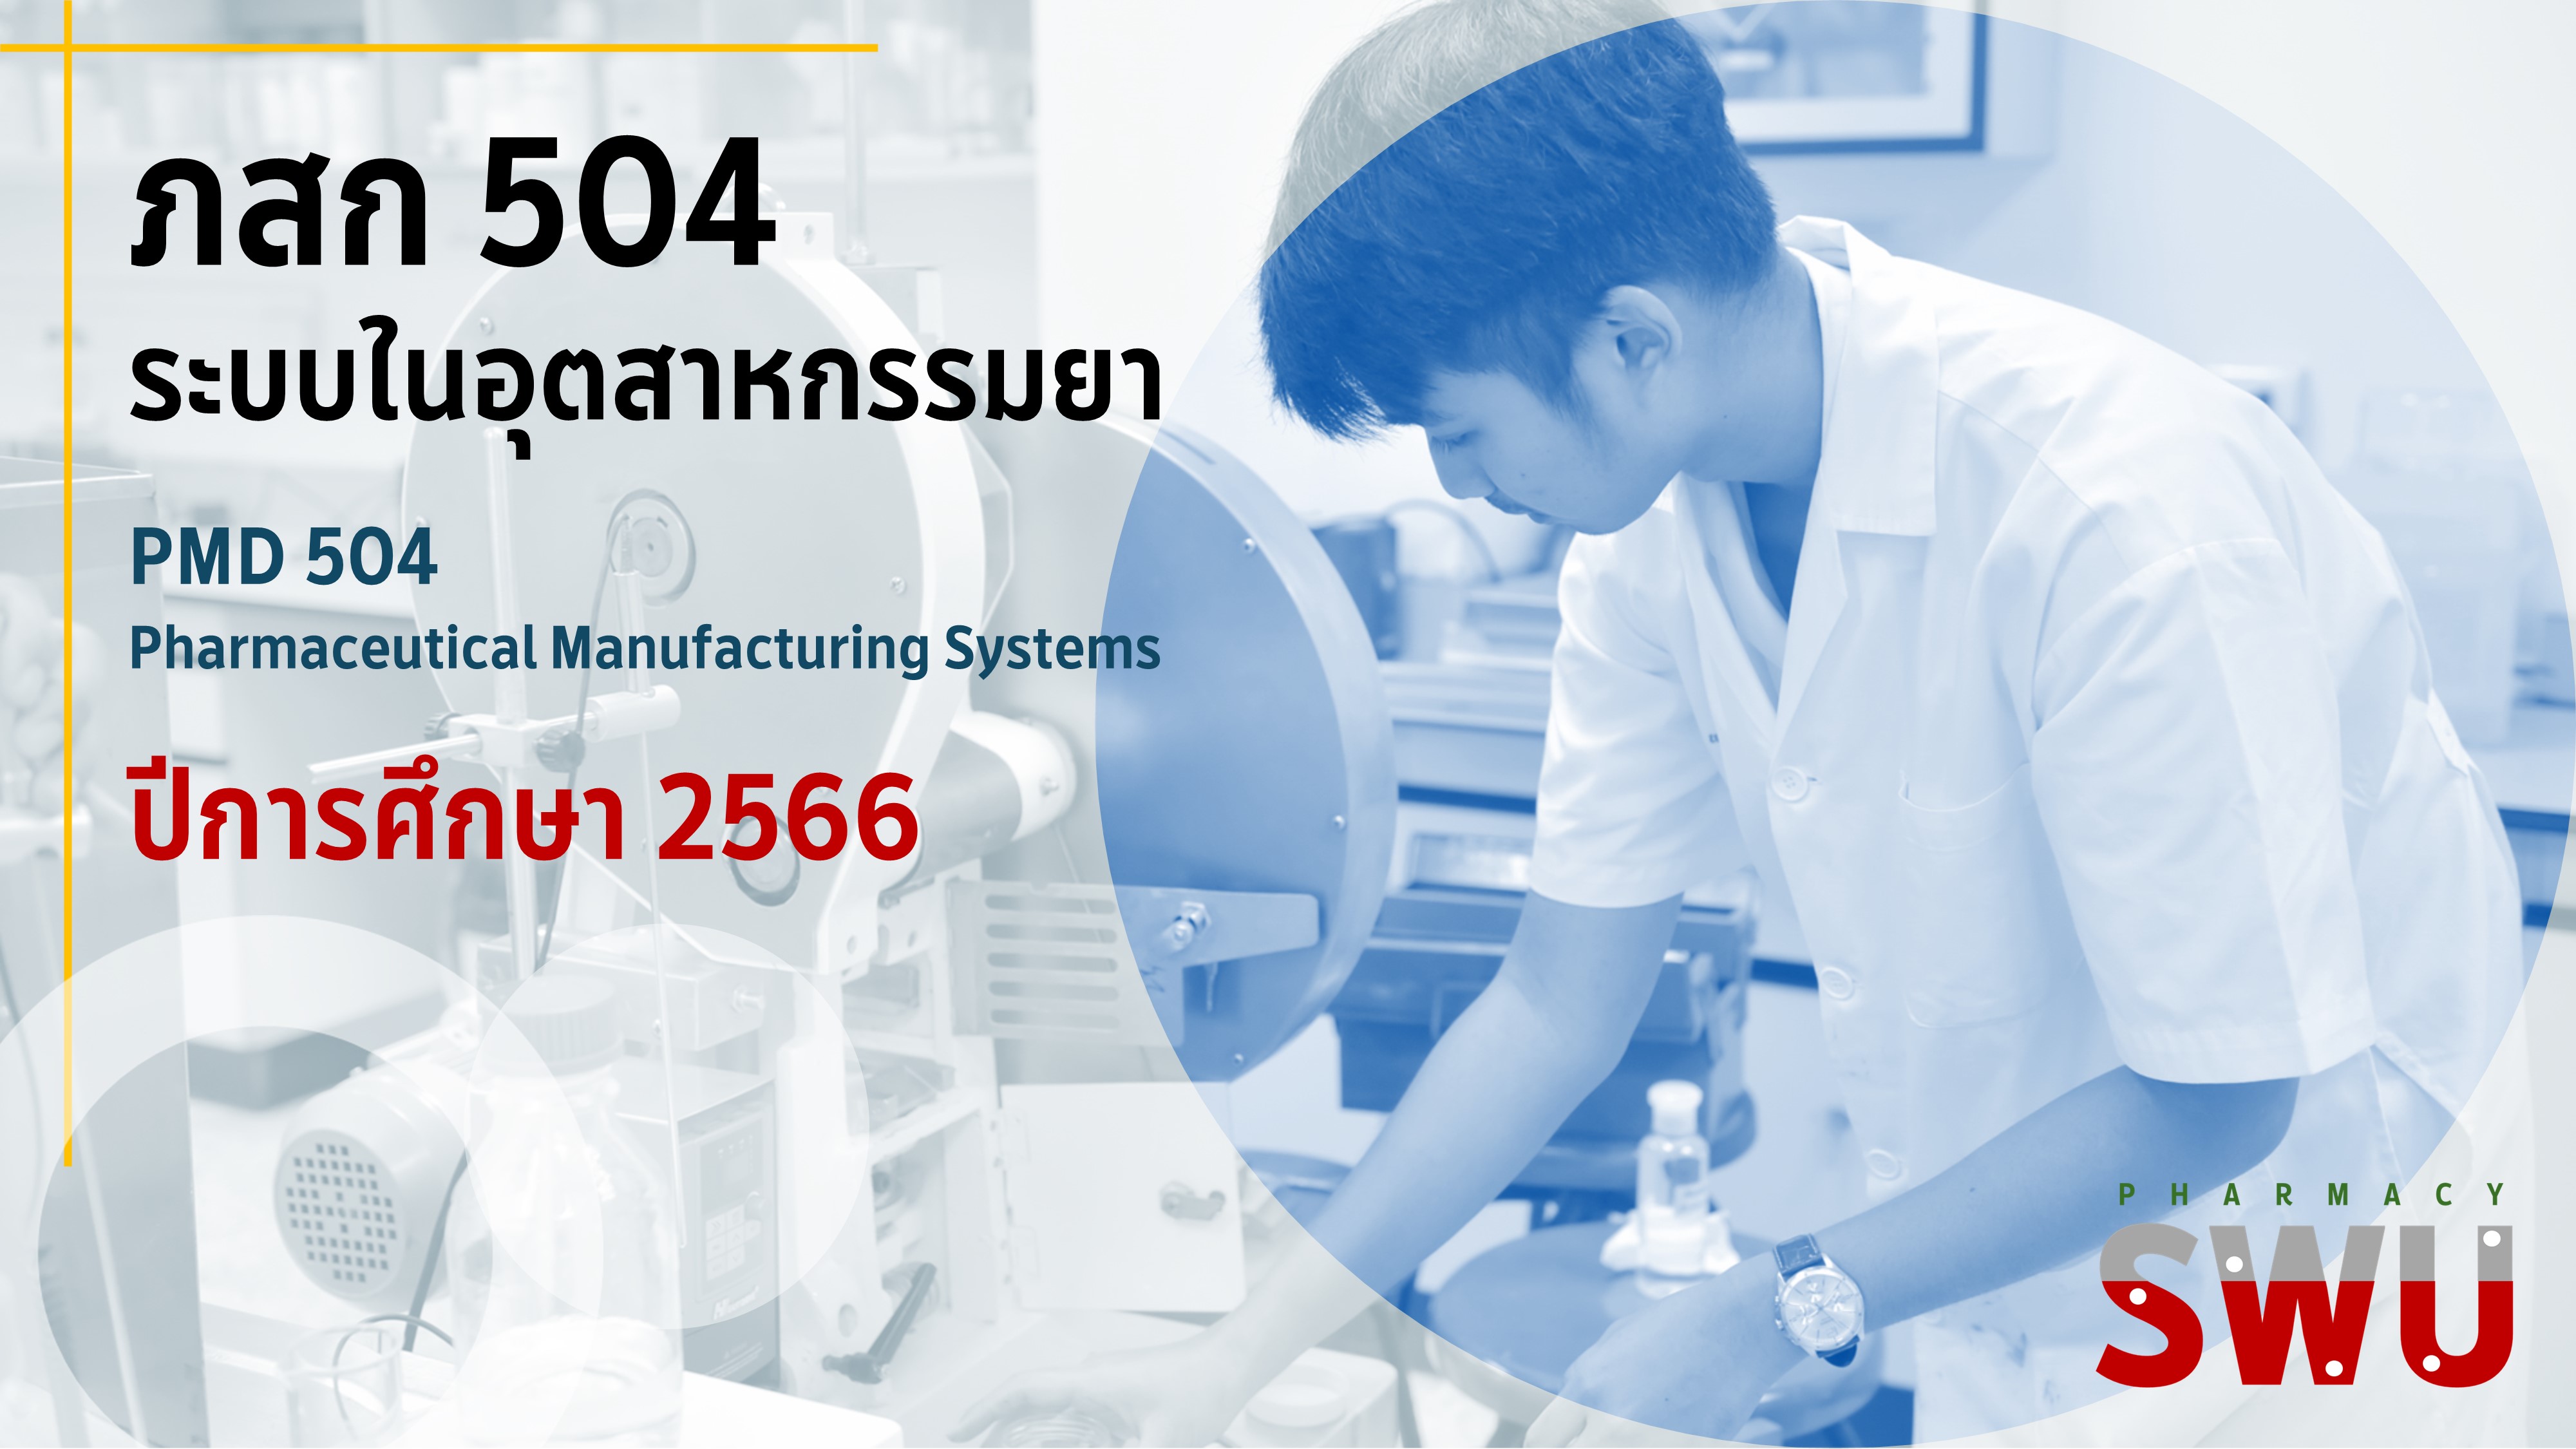 ภสก 504 ระบบในอุตสาหกรรมยา ปีการศึกษา 2566